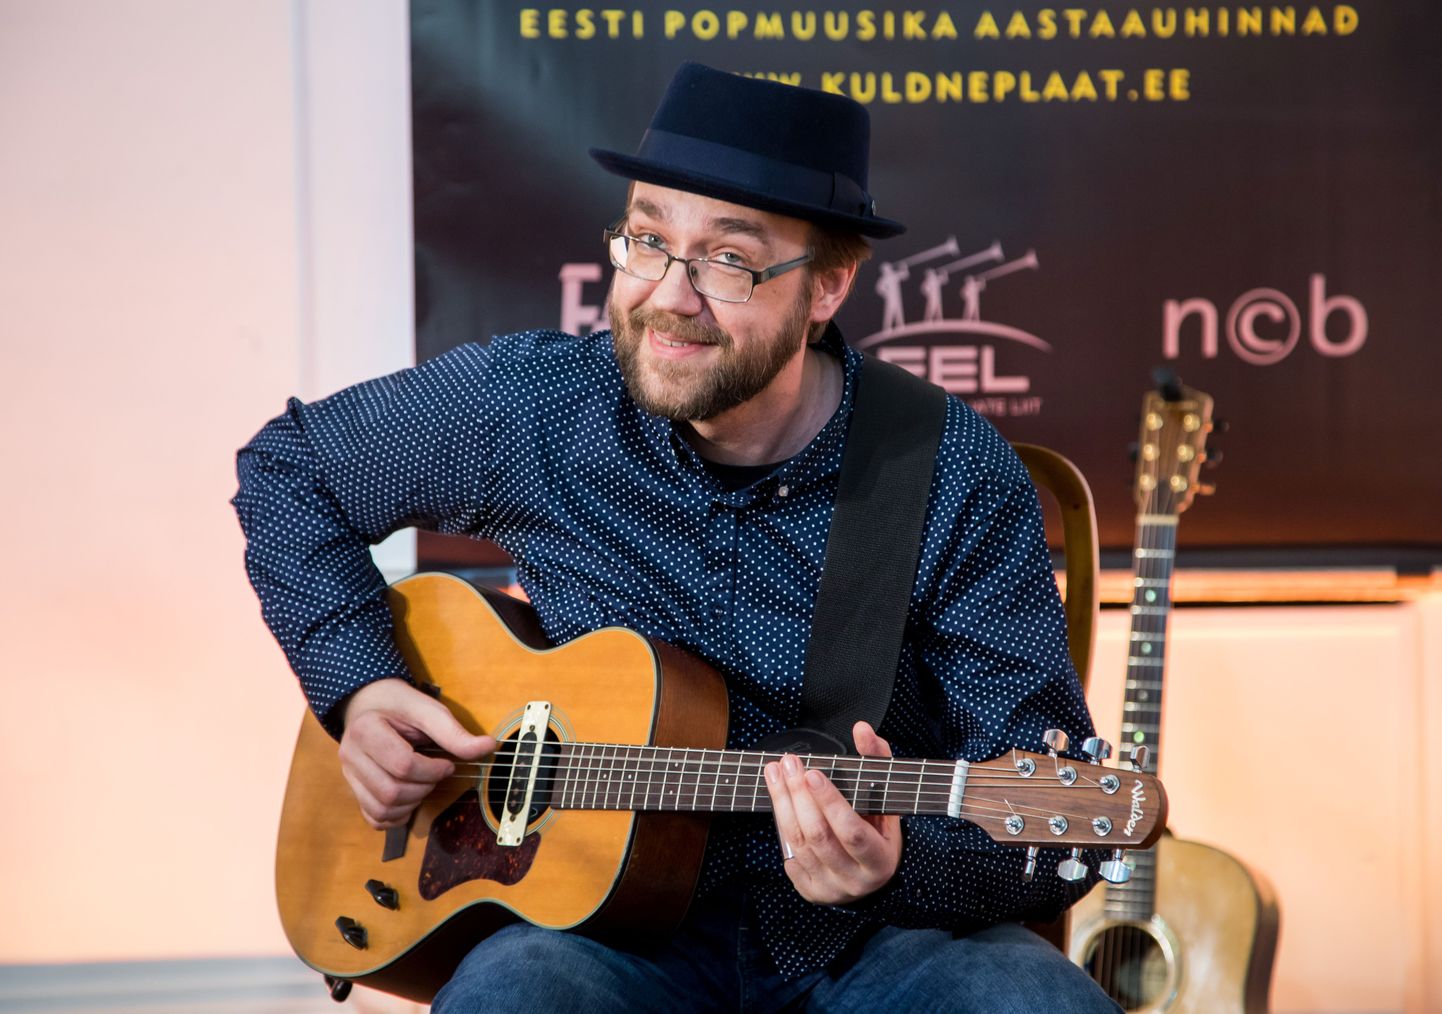 Andres Roots mängis märtsi algul popmuusika aastaauhindade Kuldne Plaat jagamisel.